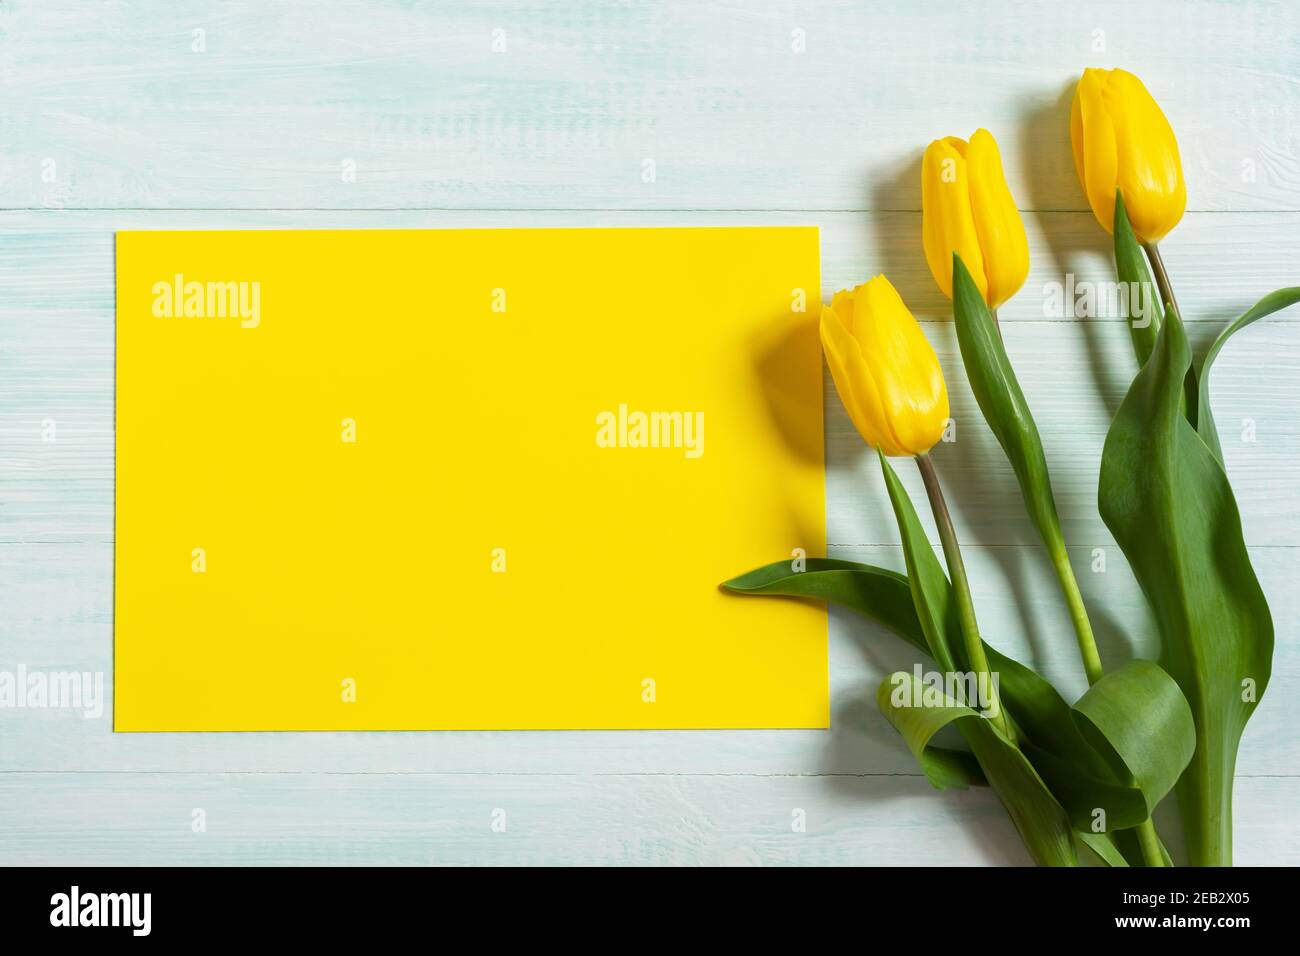 Tulipes jaunes et blanches sur fond de bois clair. Le concept de la Journée internationale de la femme, le 8 mars, 1 jour de printemps. Plat de printemps coloré et lumineux Banque D'Images